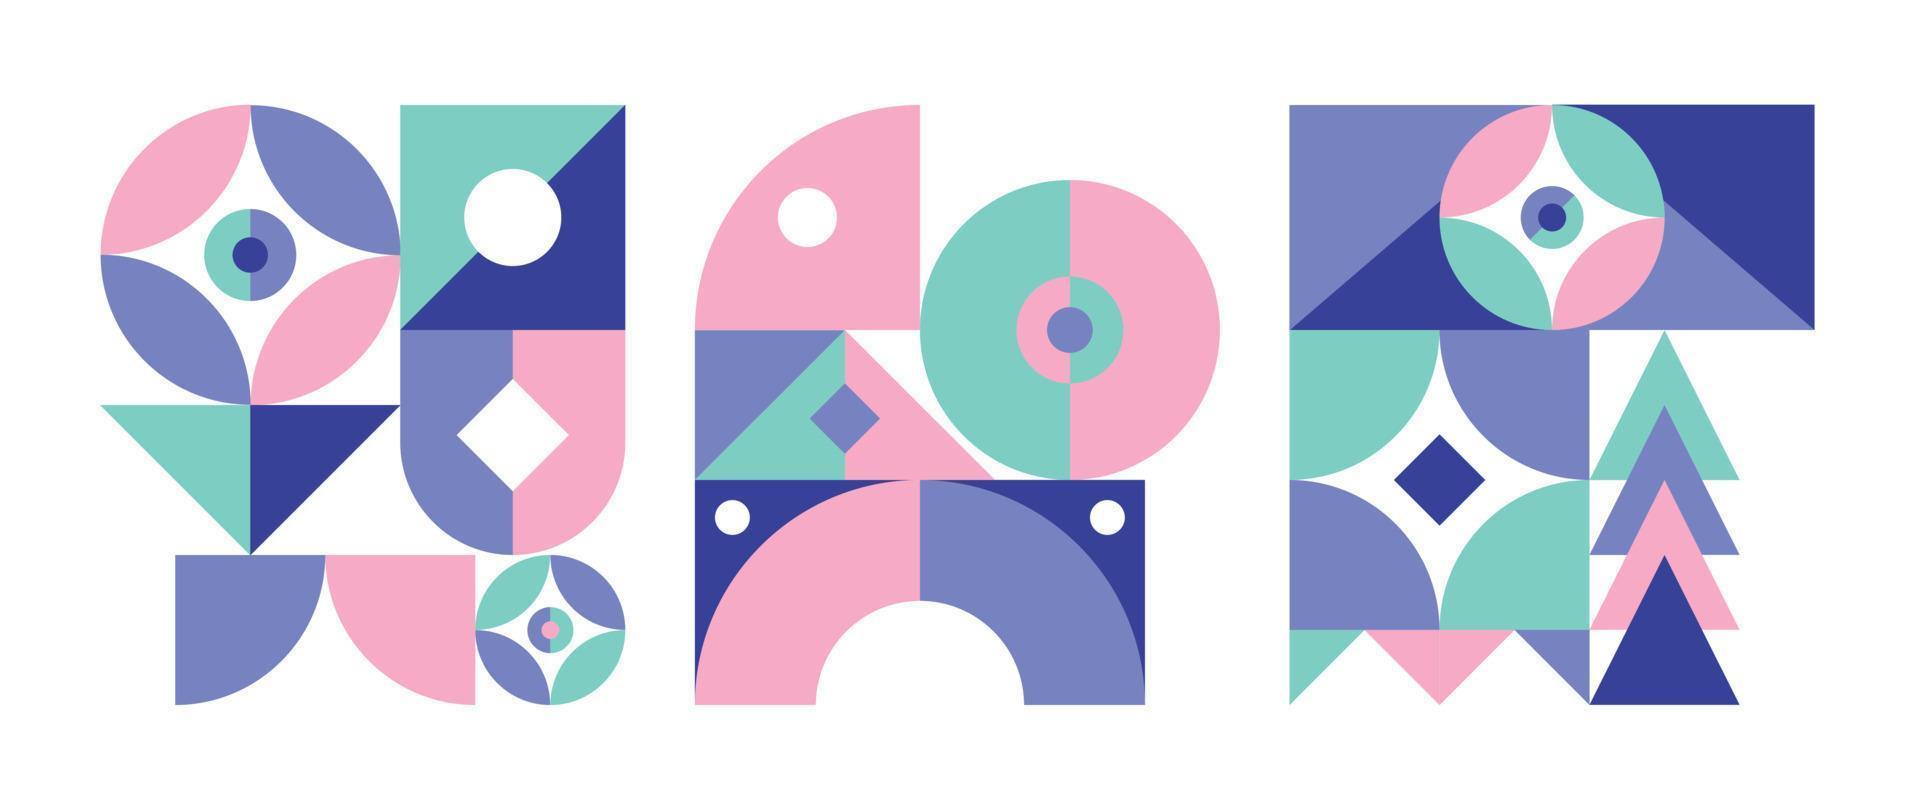 conjunto de elementos de padrão geométrico em estilo de meados do século. círculo abstrato retrô, forma quadrada e triangular com cor pastel azul, rosa e verde. design moderno para capa, cartão de visita, pôster, arte de parede. vetor